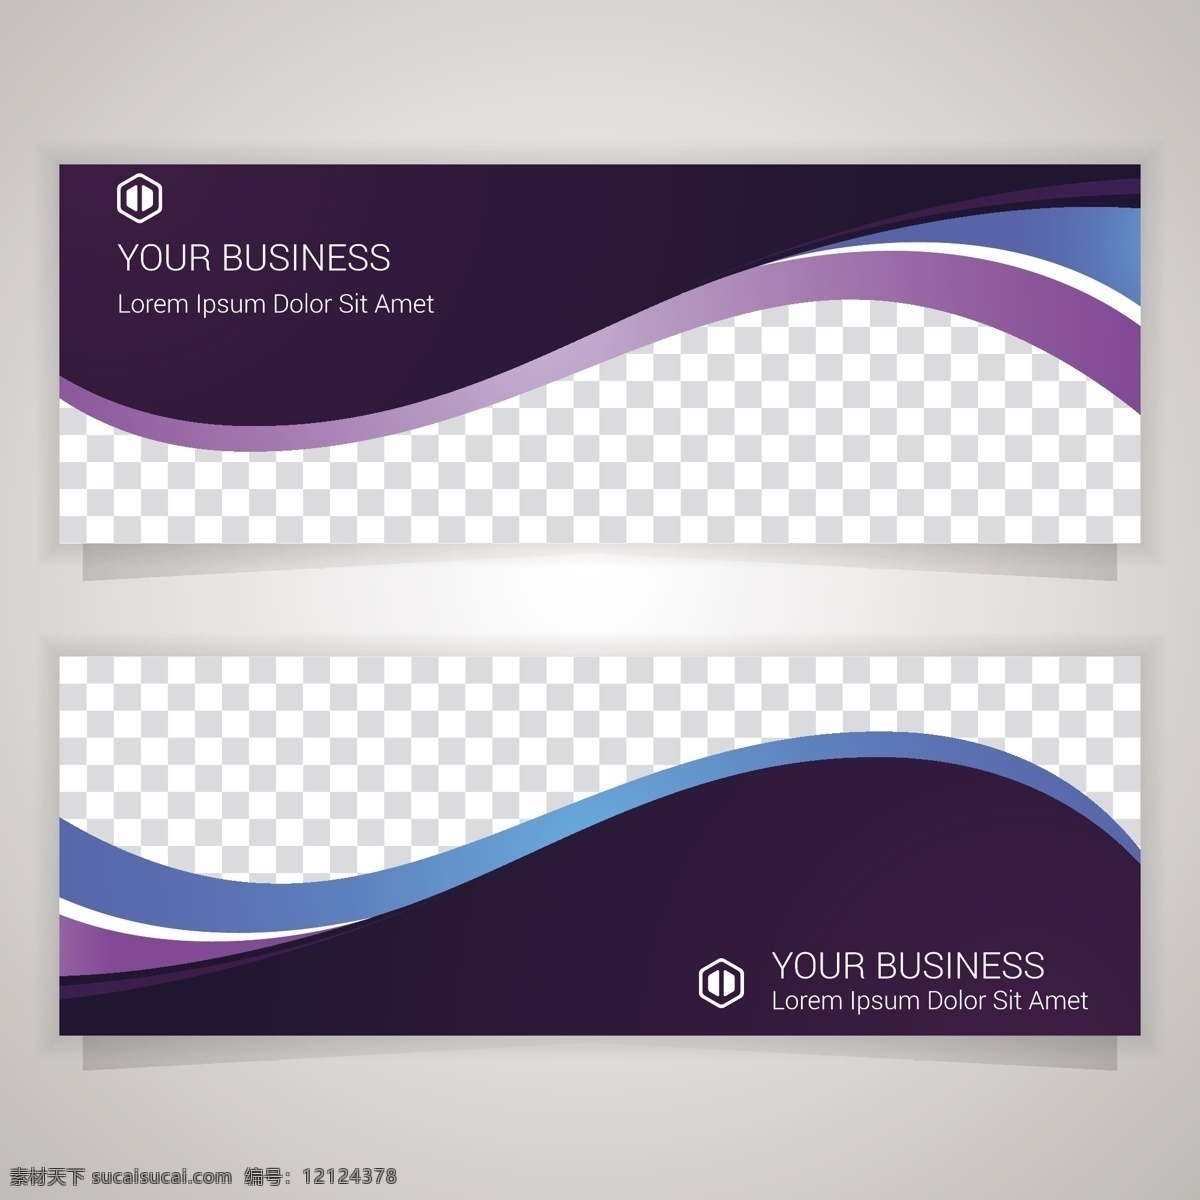 紫色 波纹 商业 横幅 模板 紫色波纹 商业横幅